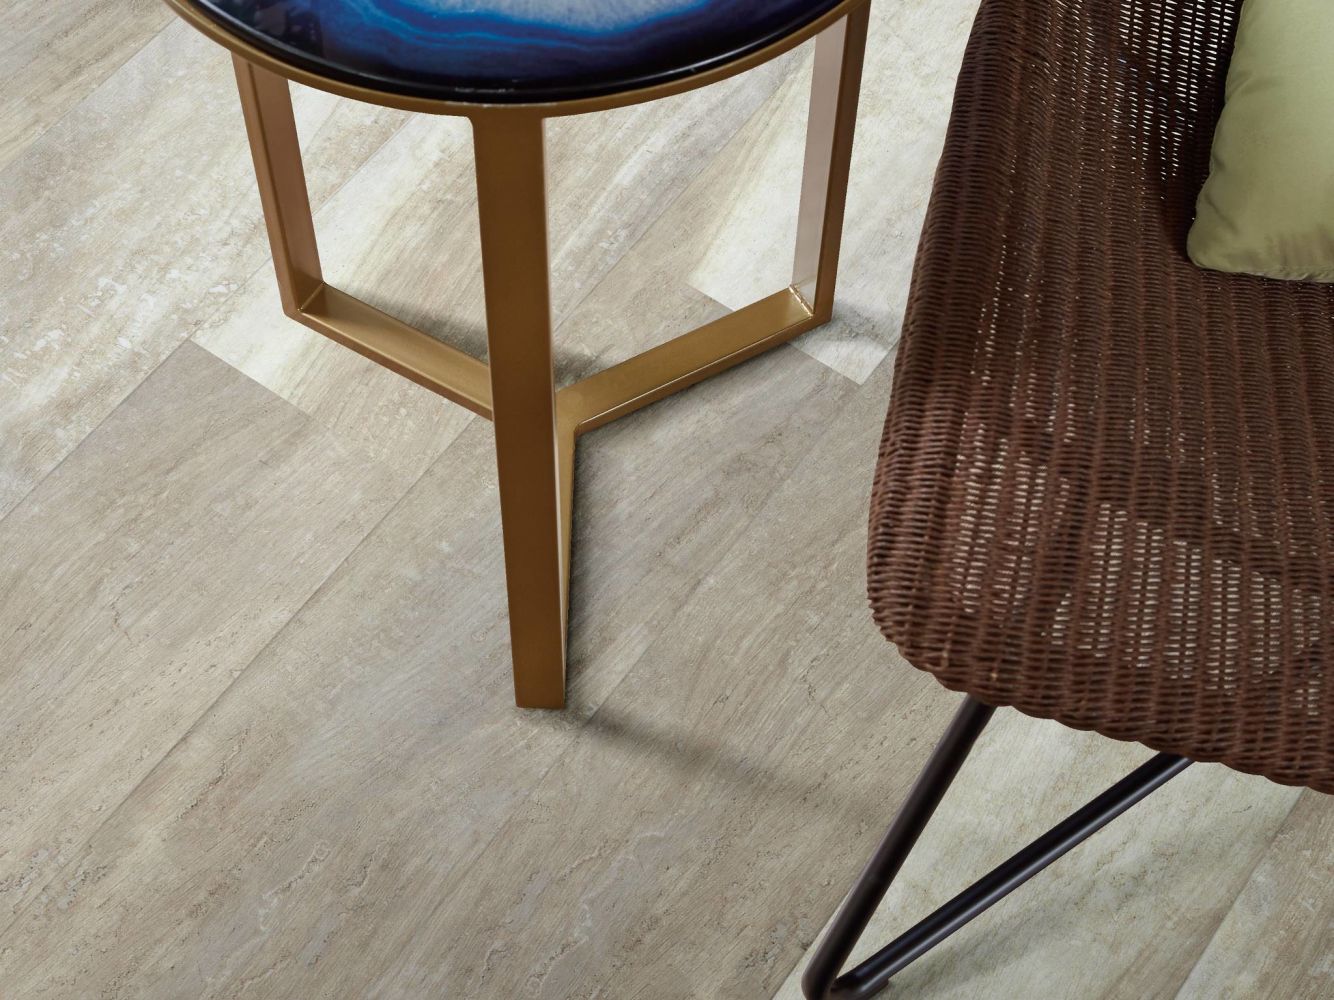 Shaw Floors Colortile Spc Cl Embark On Click Alabaster Oak 00117_CV161